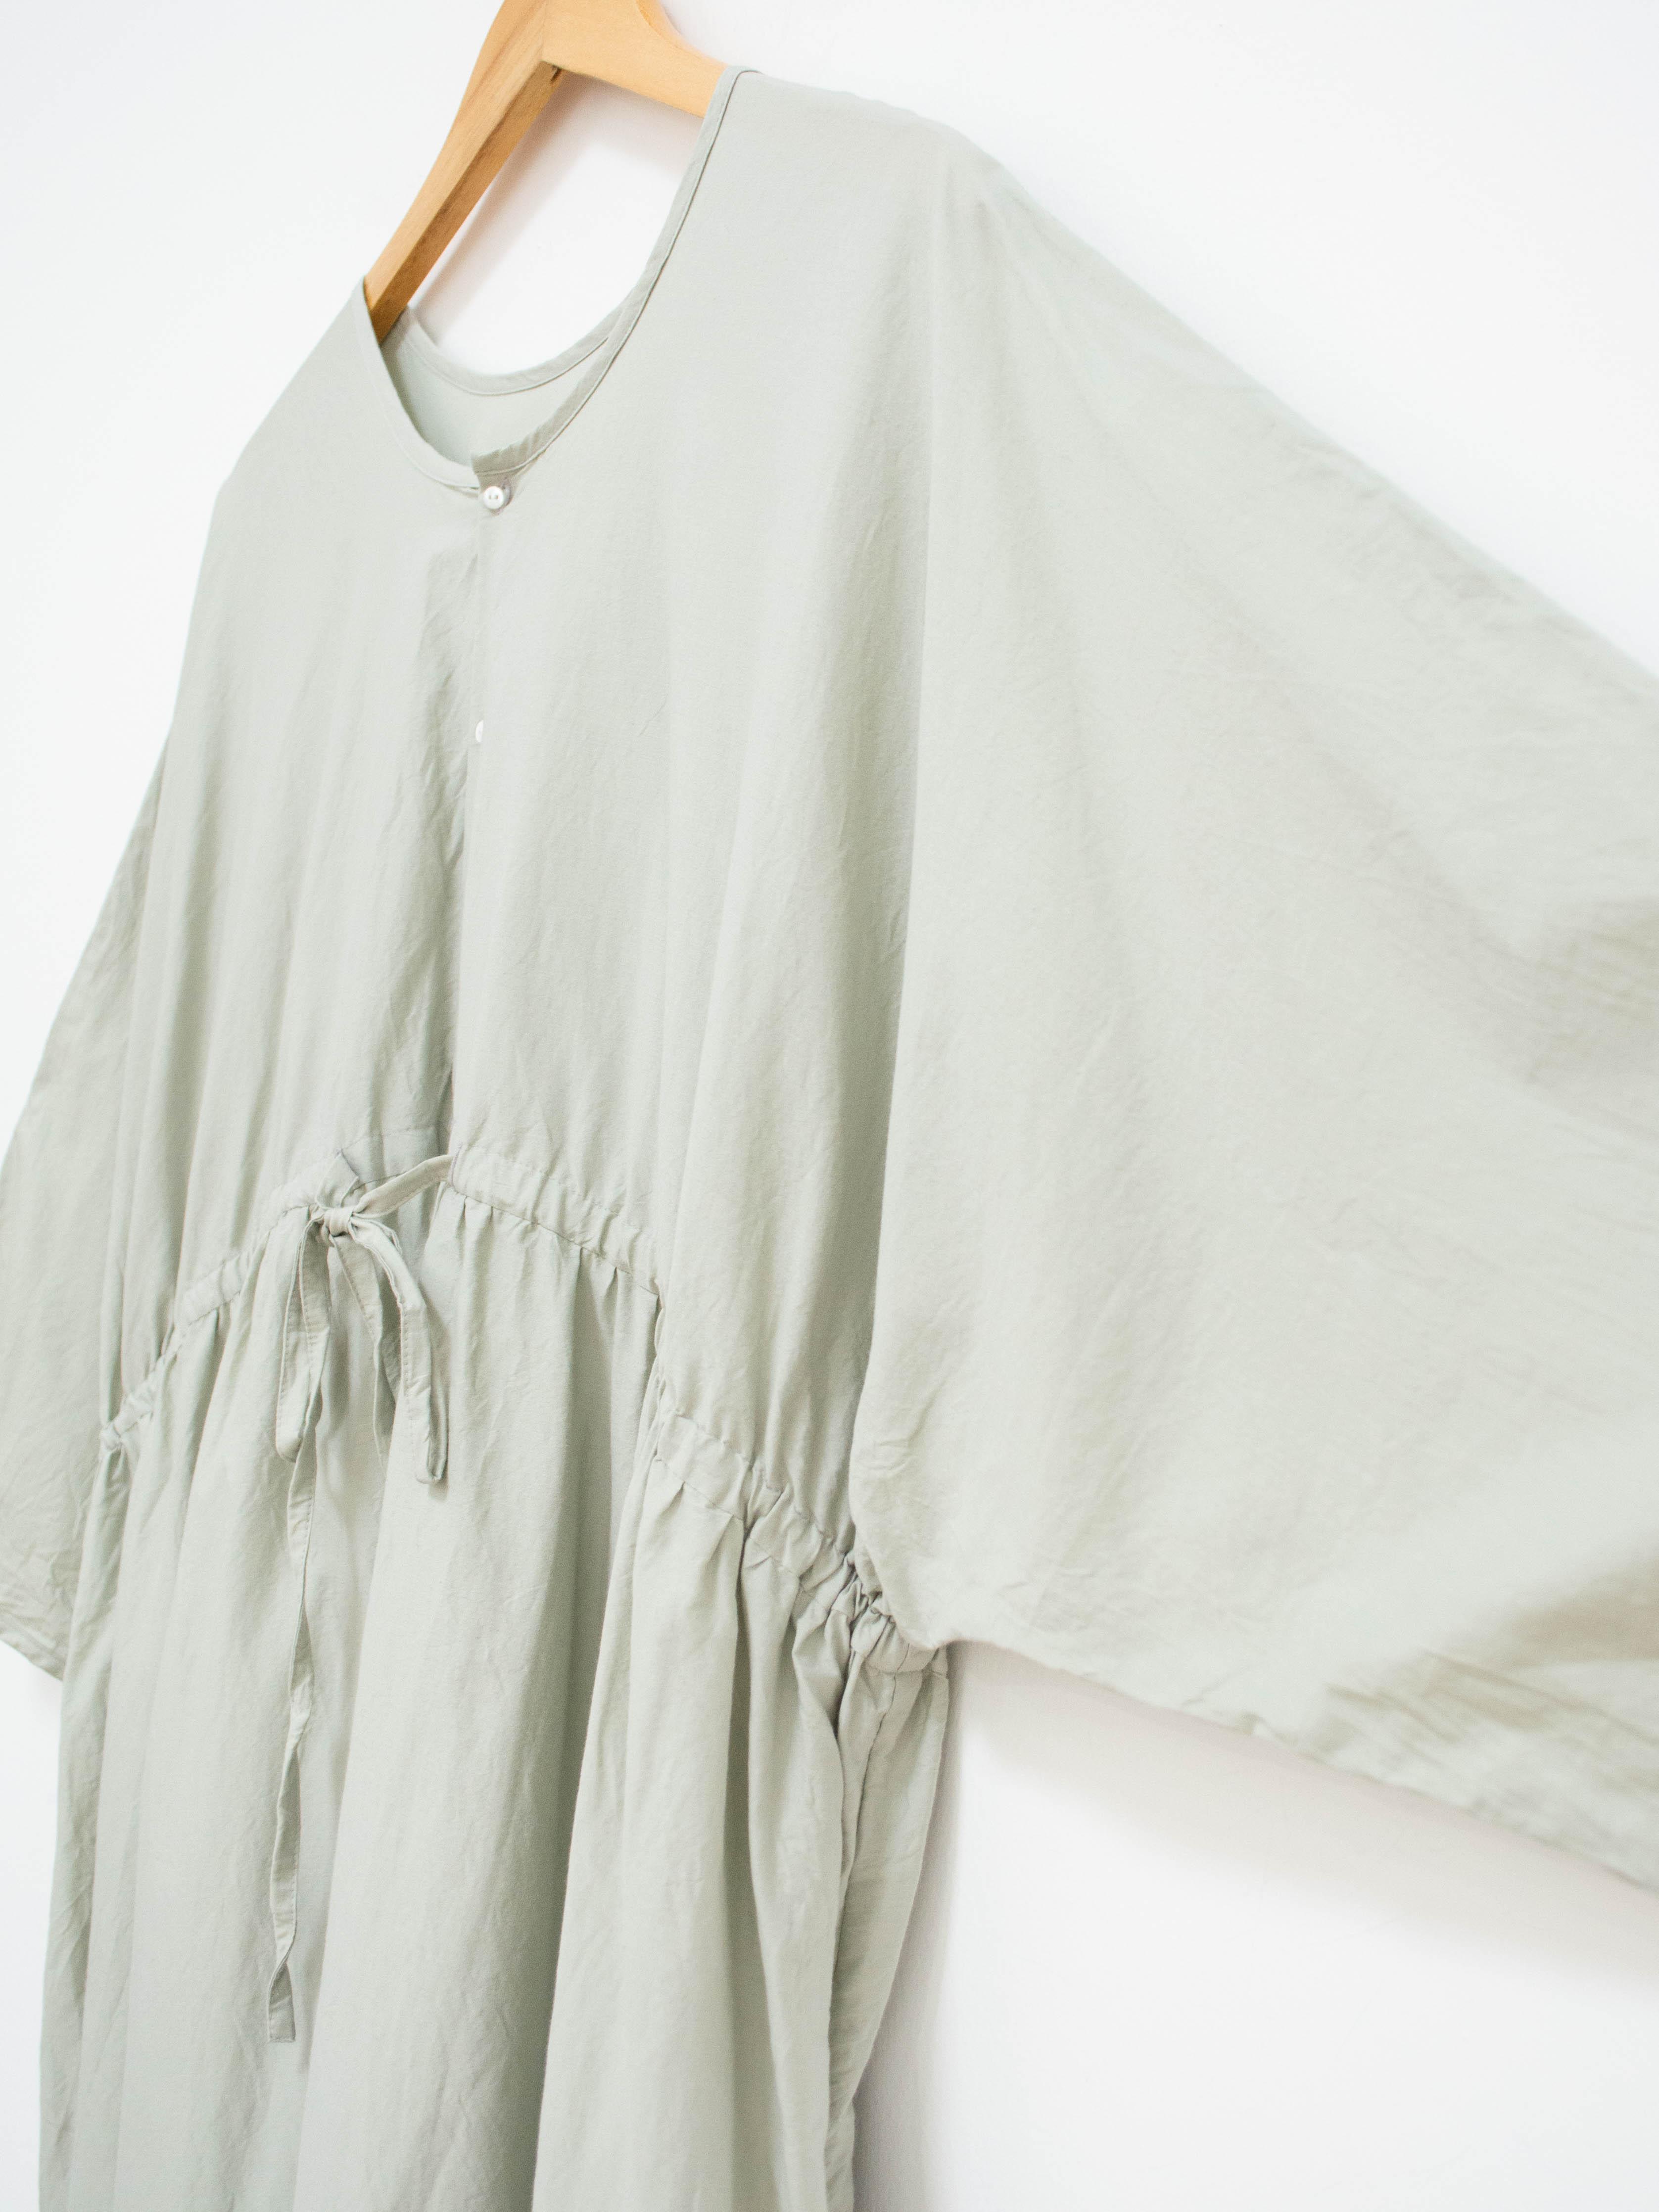 Namu Shop - Veritecoeur Co / Silk Two Way Dress - Mint Gray